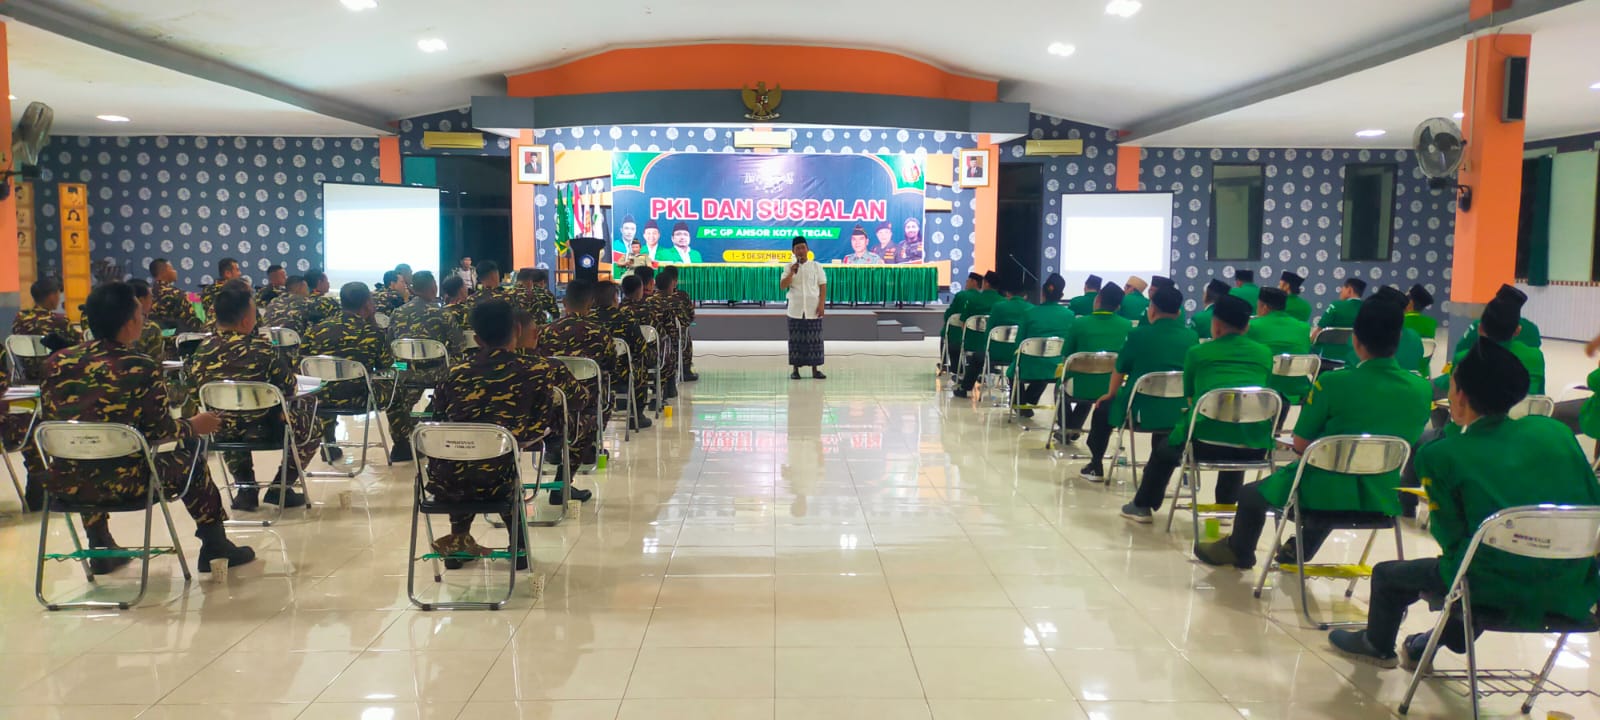 60 Kader Ansor Ikuti Susbalan di Kota Tegal, Sholahudin Aly Singgung Kaderisasi Berjenjang 